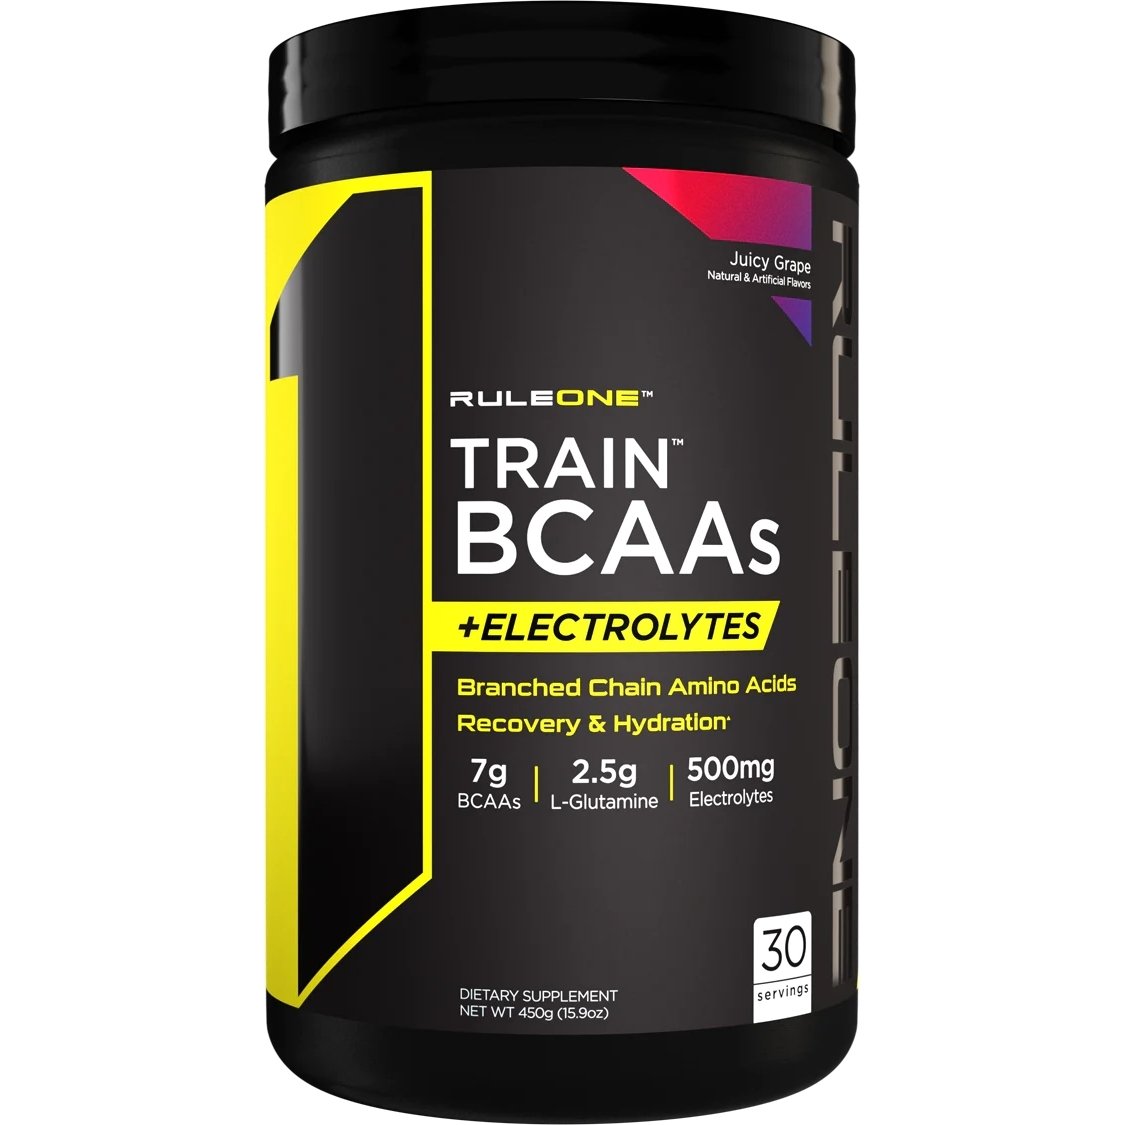 Аминокислота BCAA Rule 1 Train BCAAs + Electrolytes, 450 грамм Виноград,  ml, Rule One Proteins. BCAA. Weight Loss recovery Anti-catabolic properties Lean muscle mass 